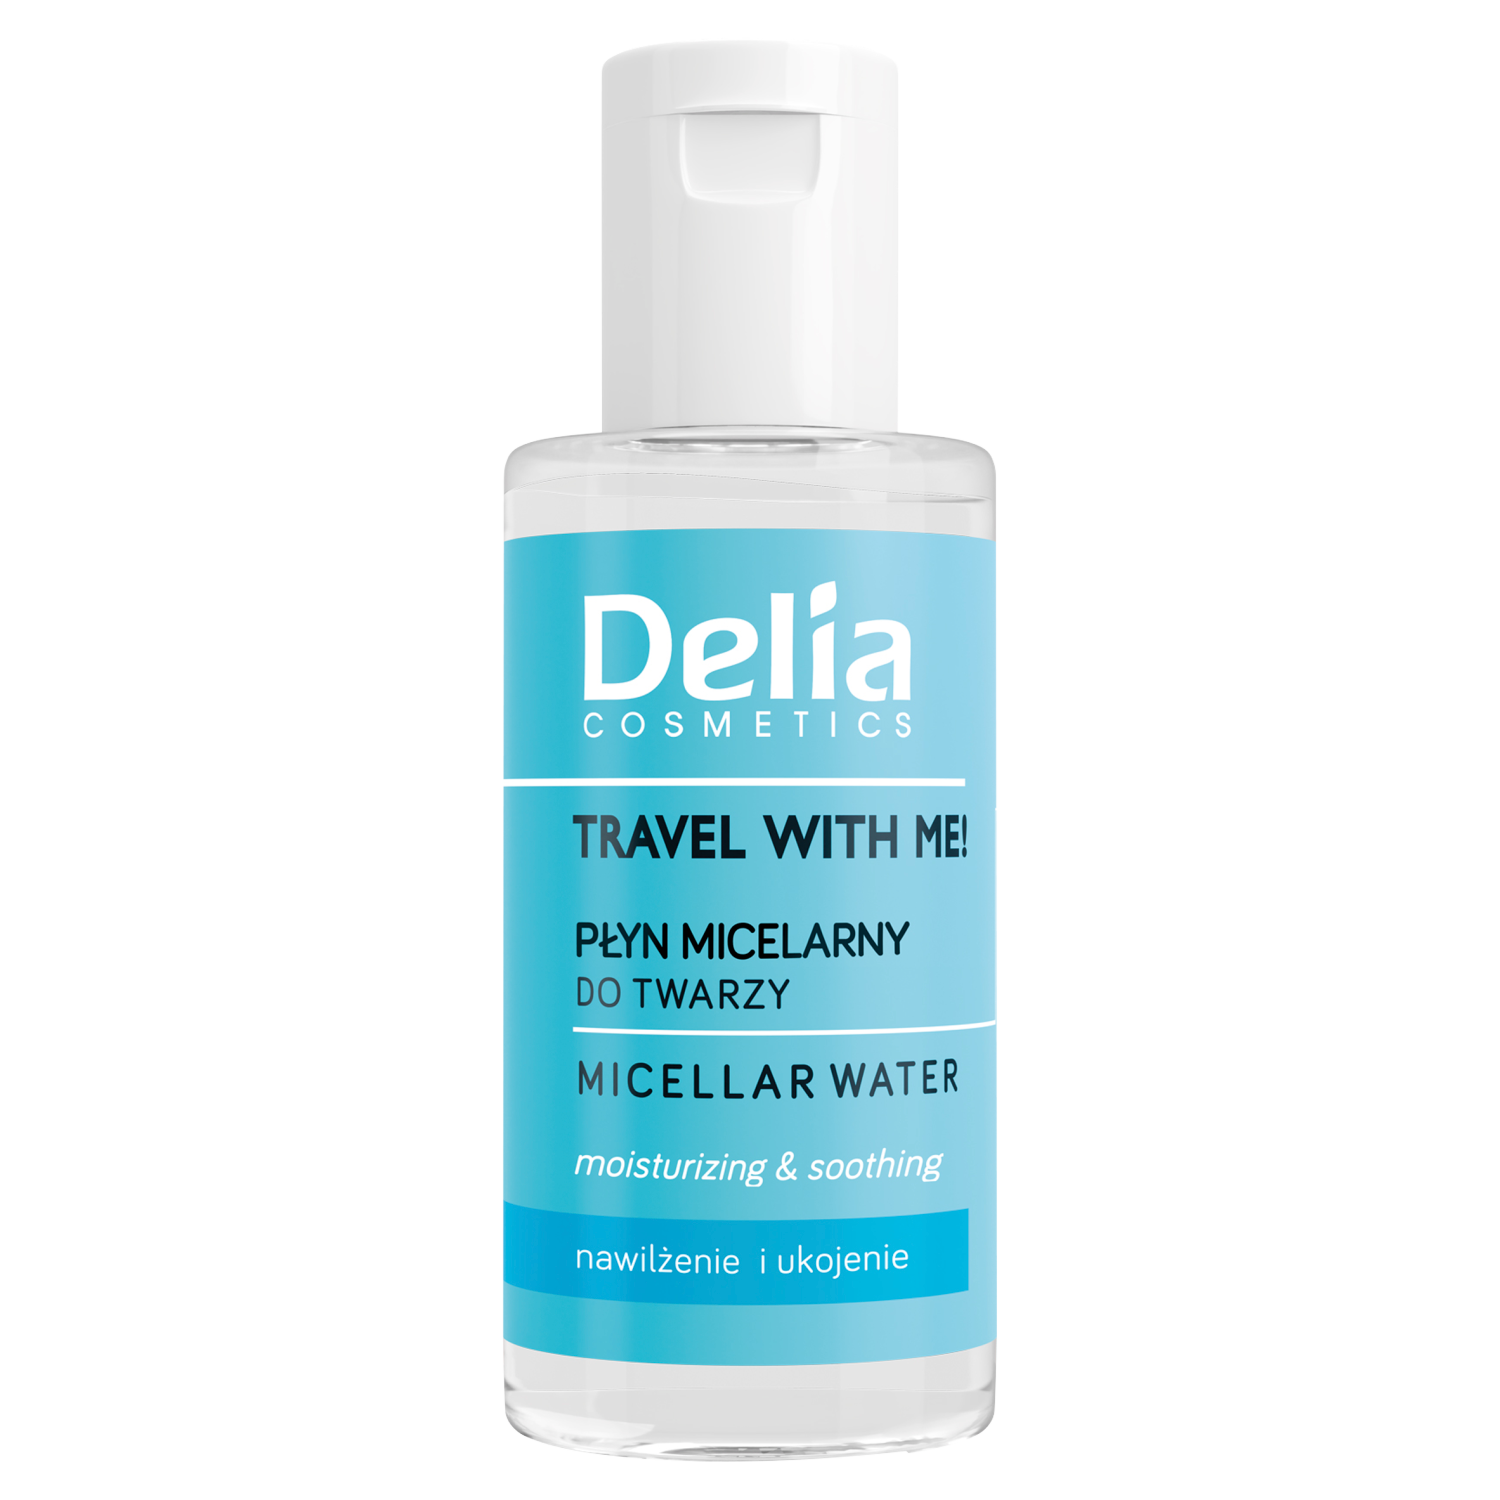 Мицеллярная жидкость для снятия макияжа Delia Travel With Me, 50 мл